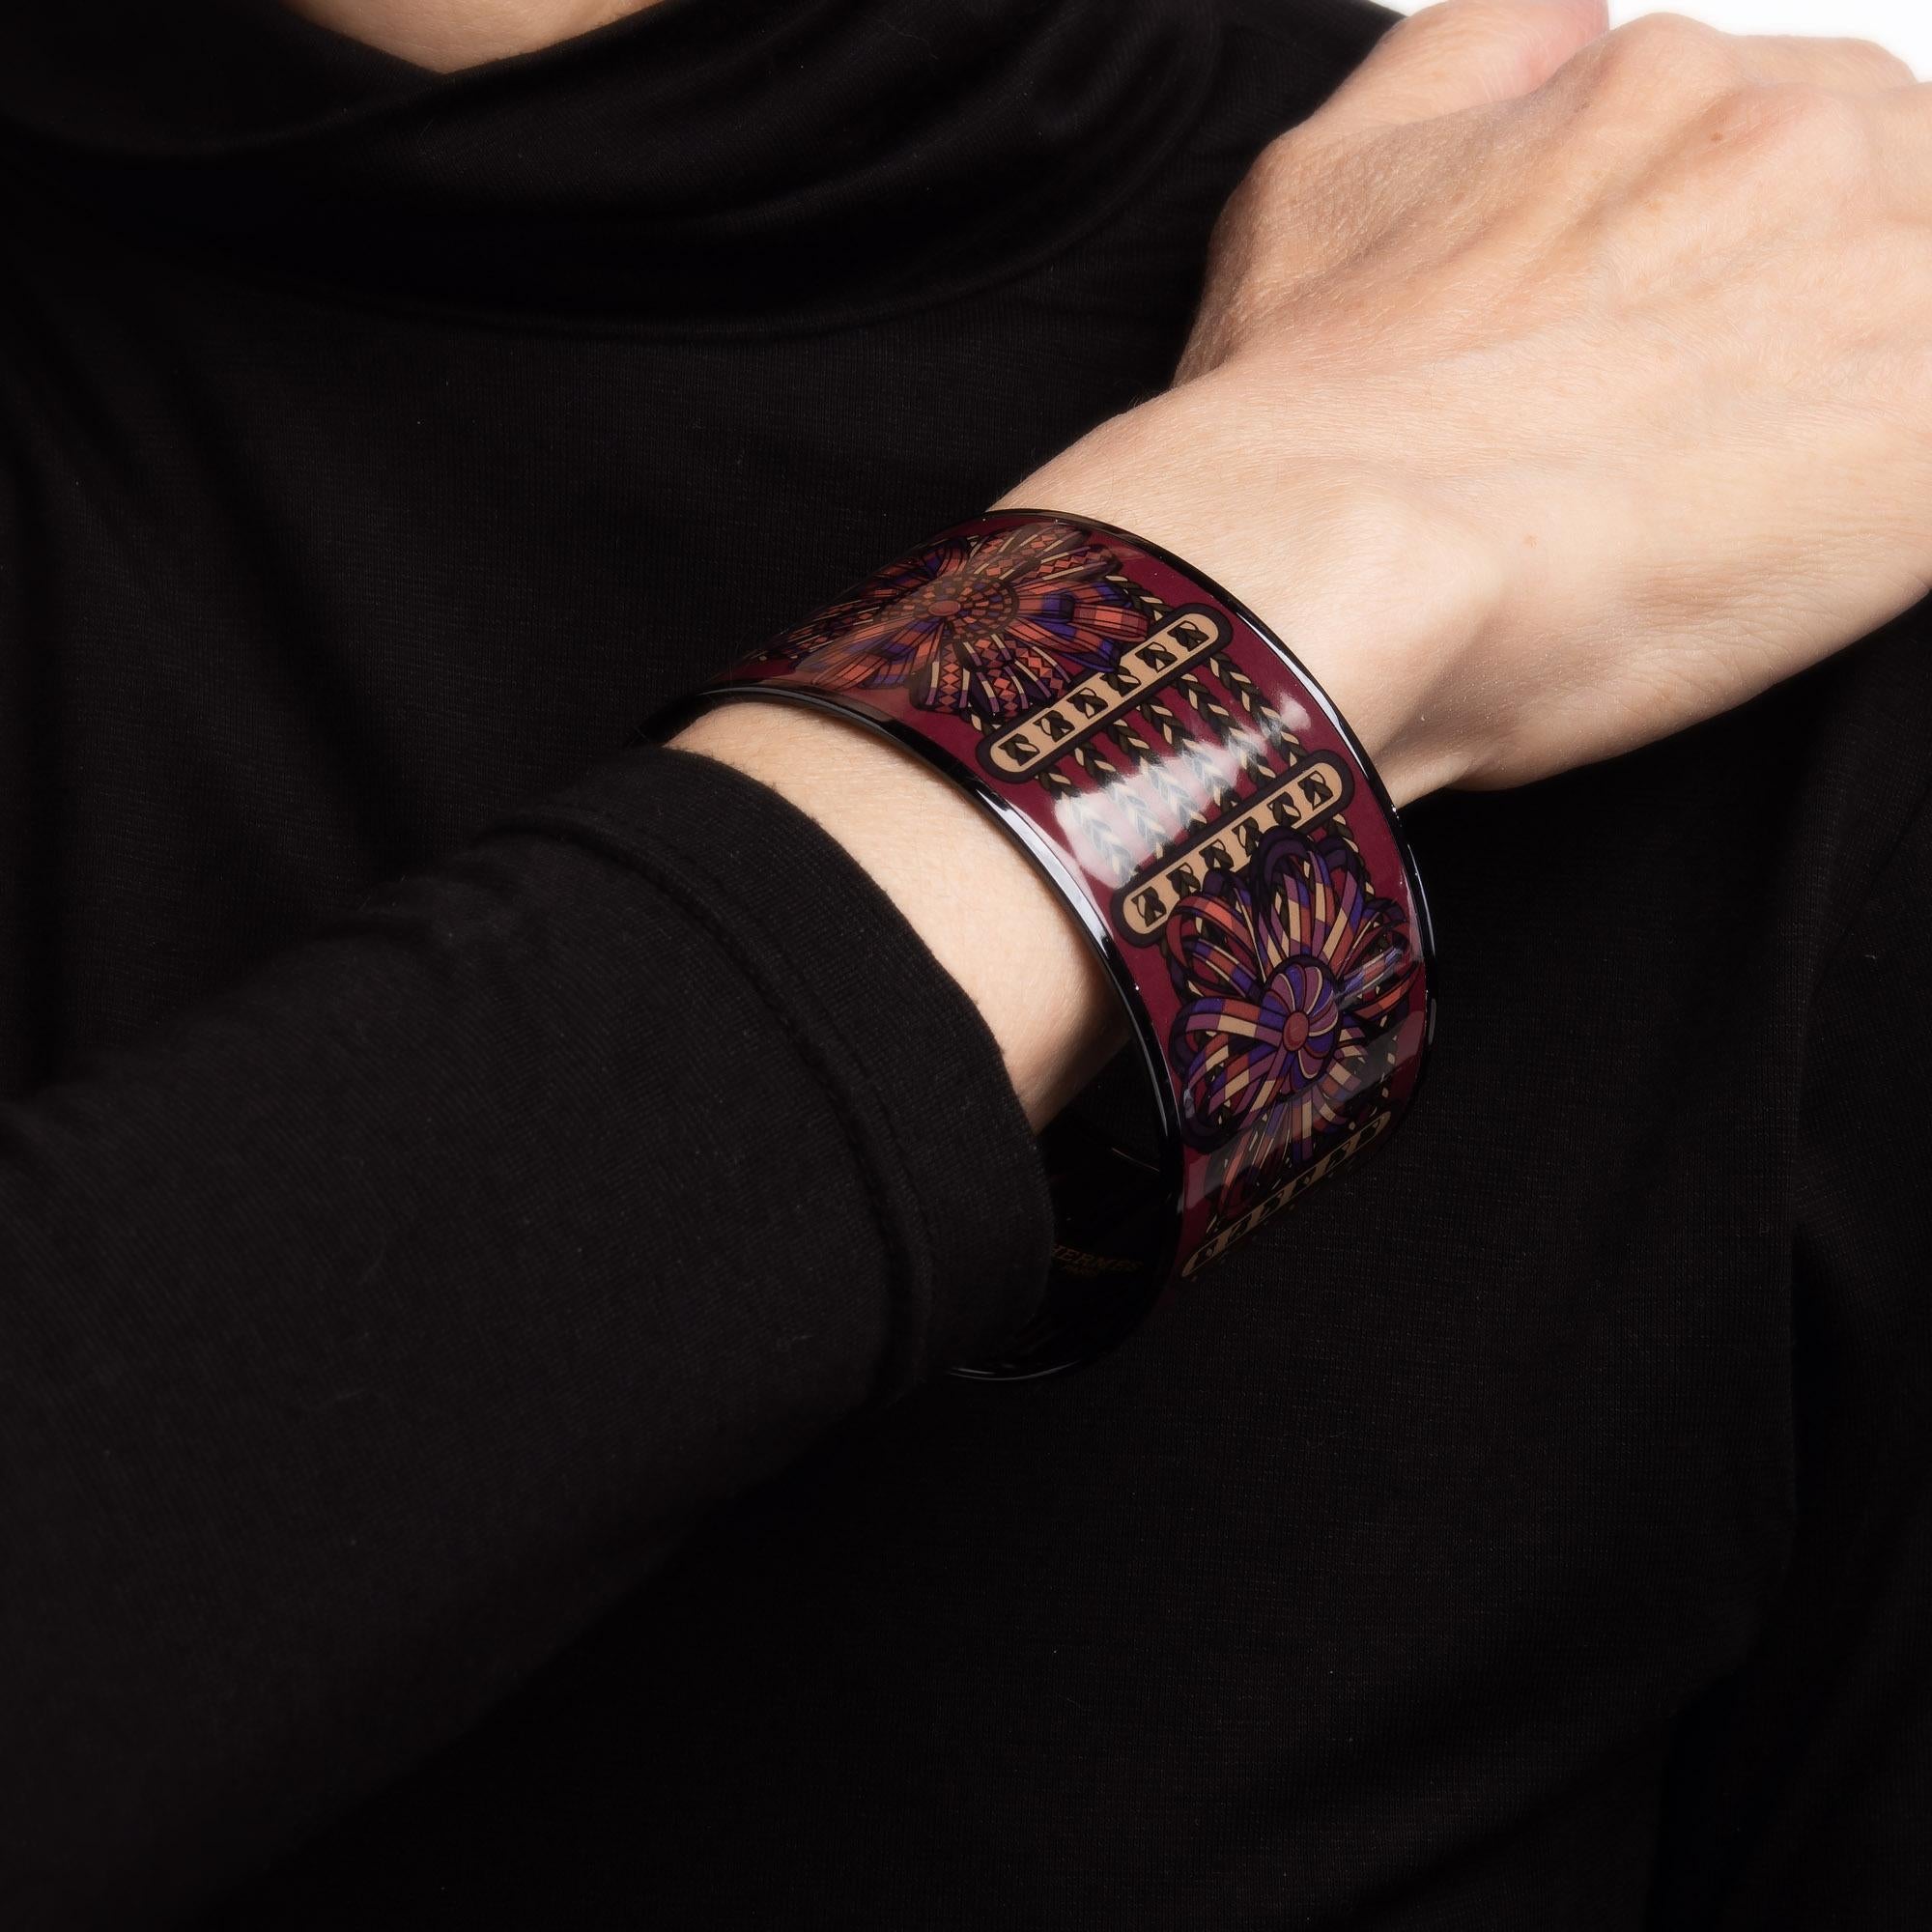 Vue d'ensemble :

Bracelet bangle en émail Hermès d'occasion avec une base marron et un design de ruban/tresse et une finition noire. 

Le bracelet large de 1.50